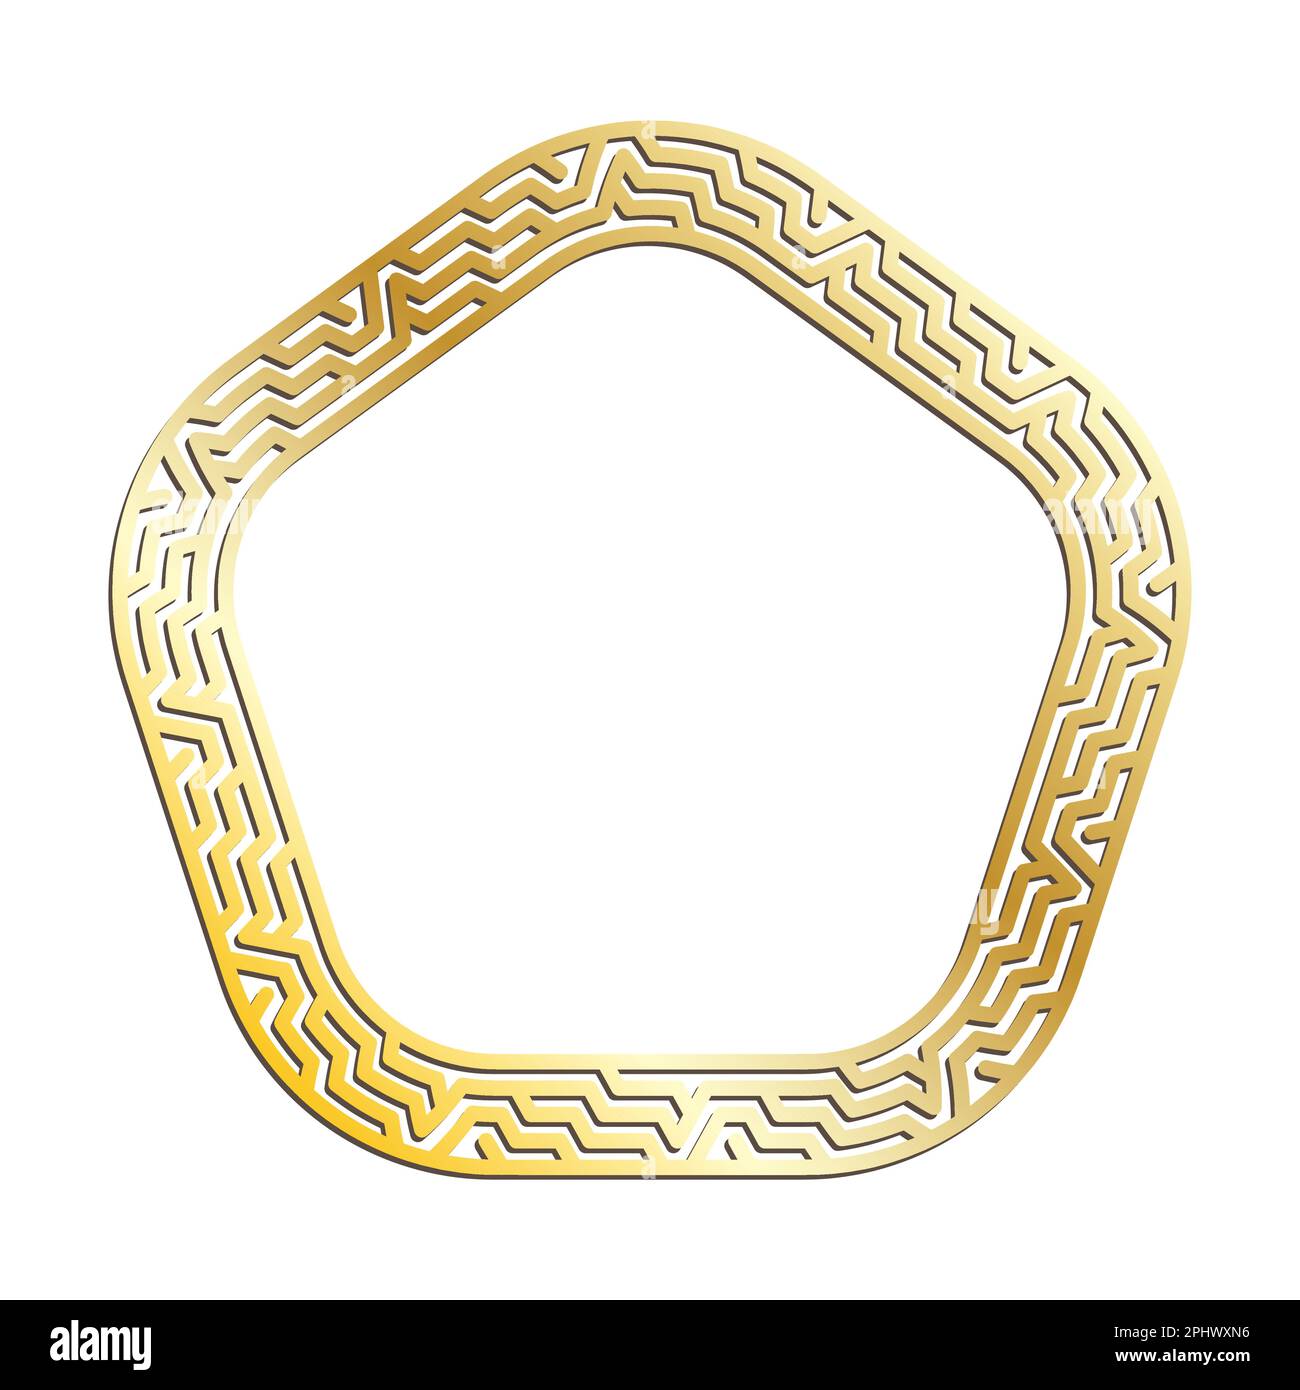 Cornici pentagonali A LABIRINTO d'oro per testate decorative. Ornamenti greci antichi in metallo d'oro isolati su sfondo bianco. Vettore Illustrazione Vettoriale